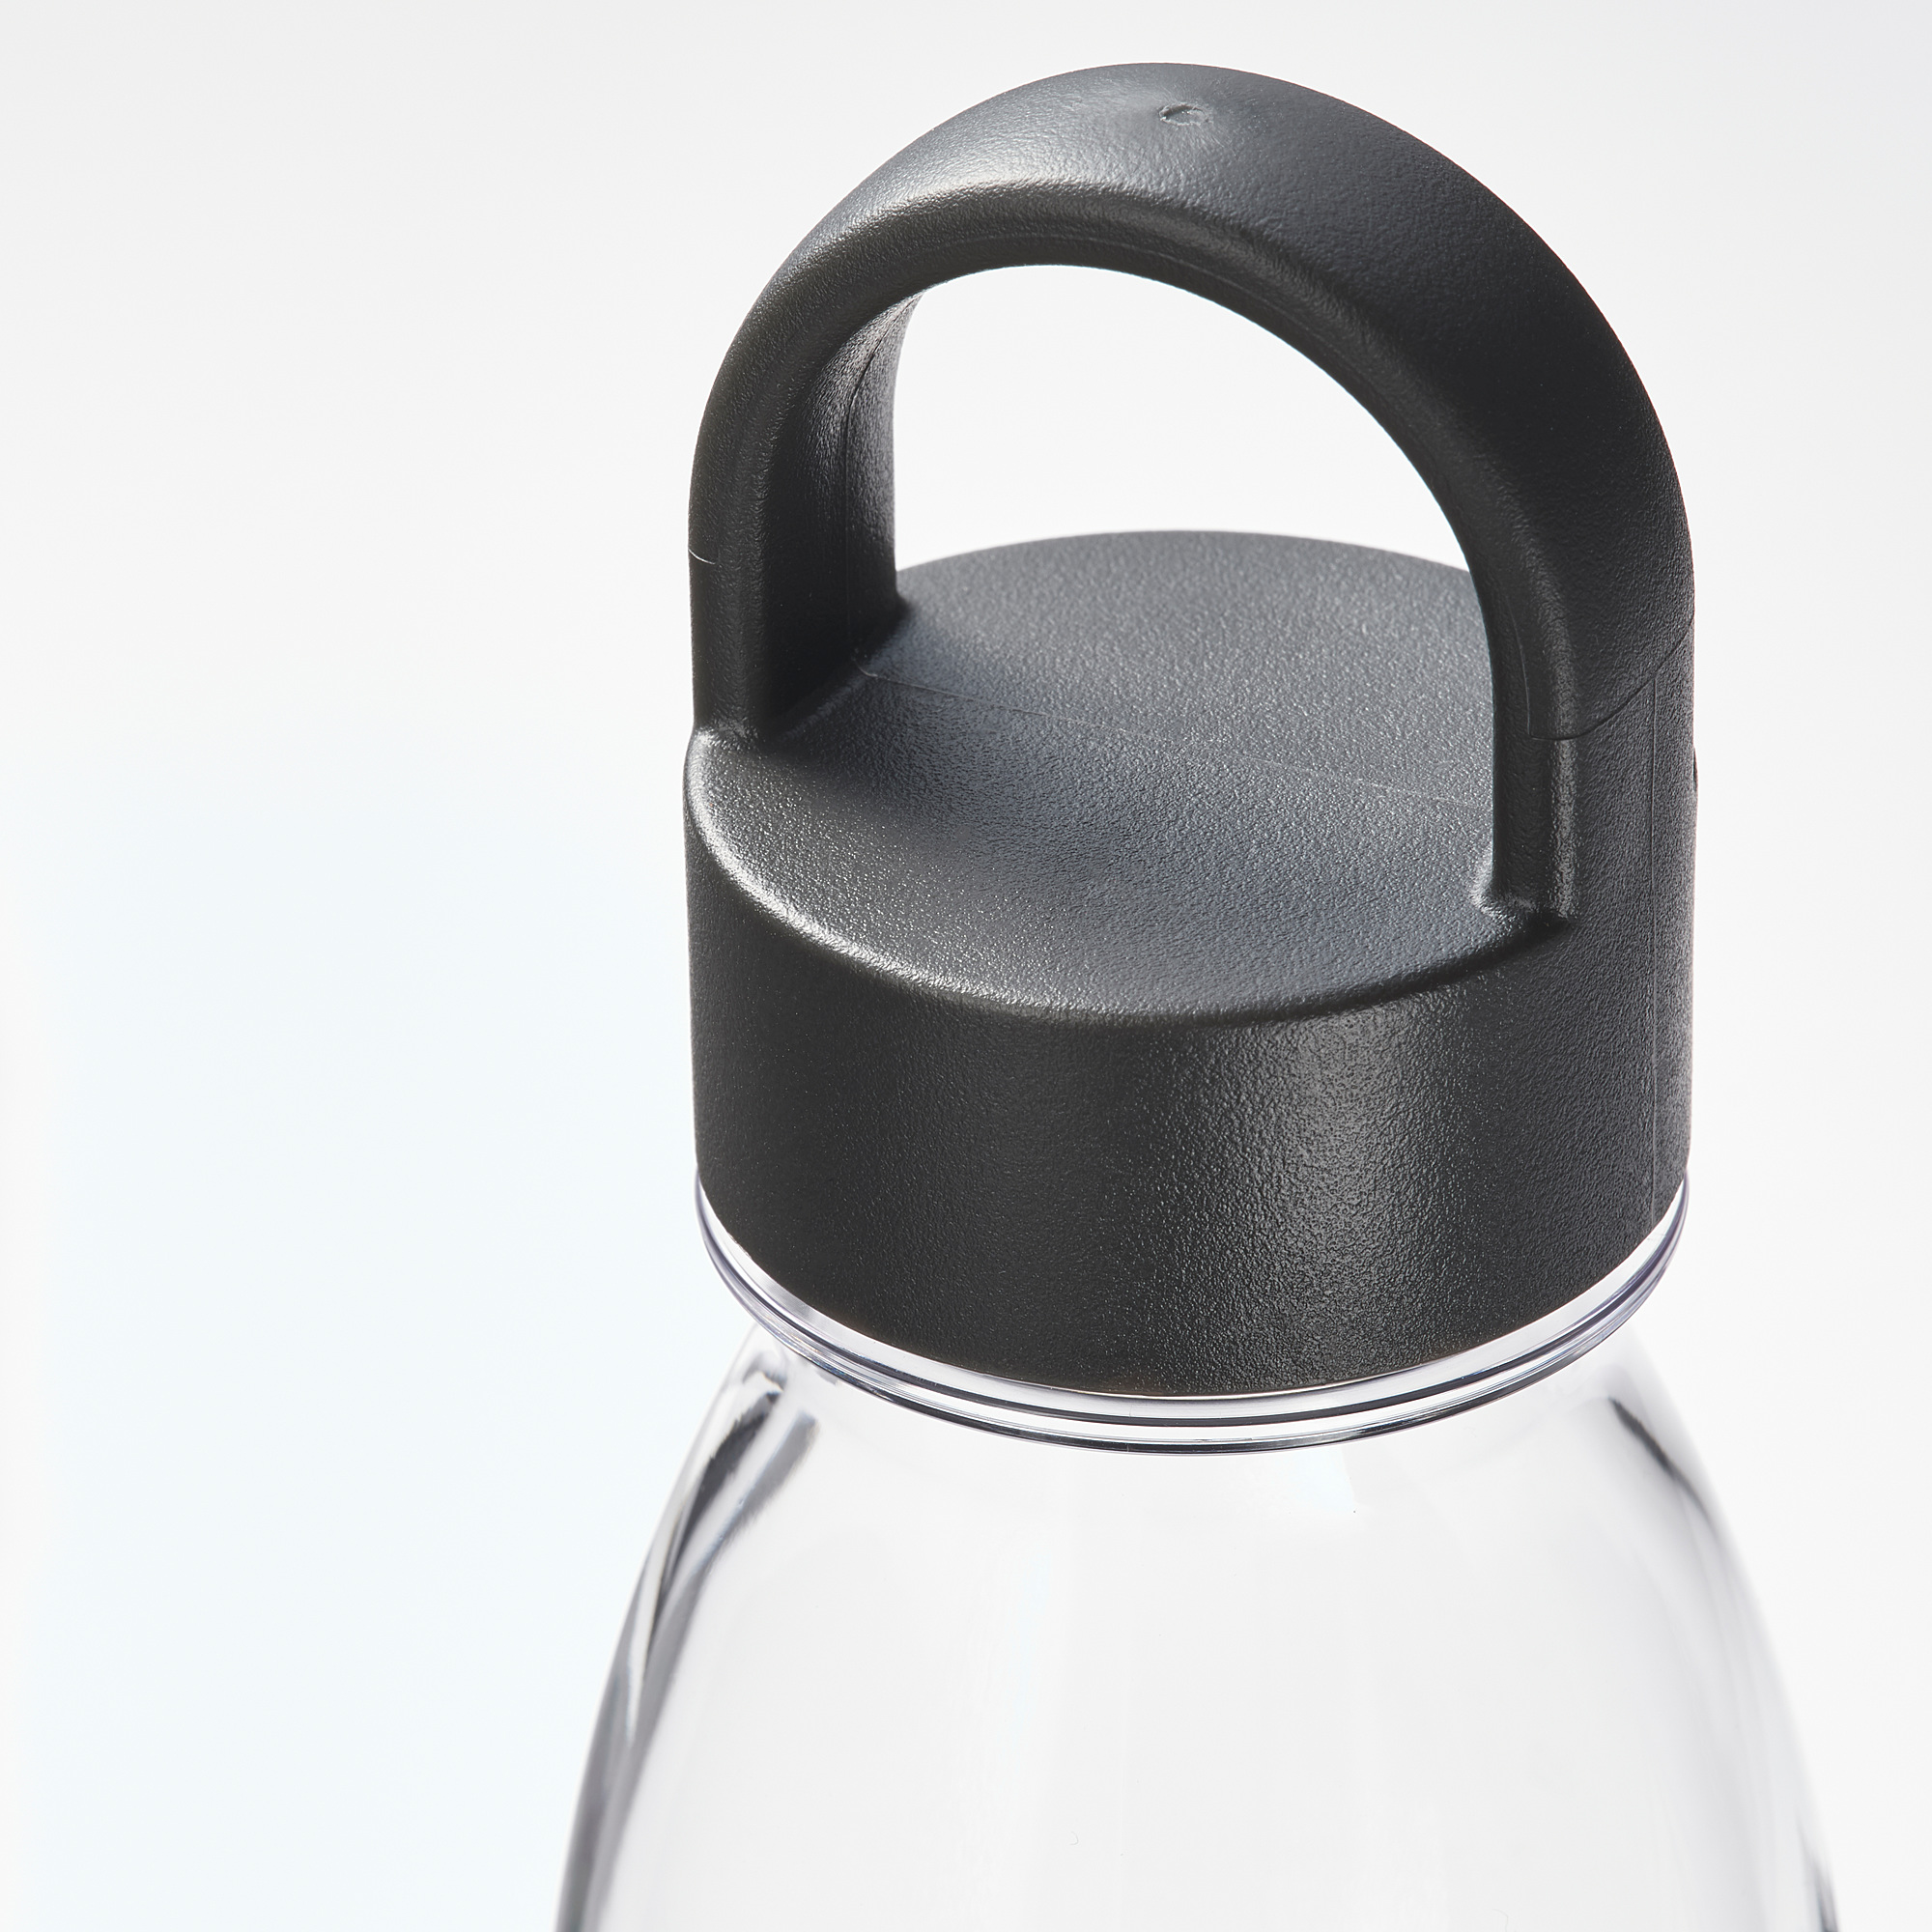 IKEA 365+ water bottle